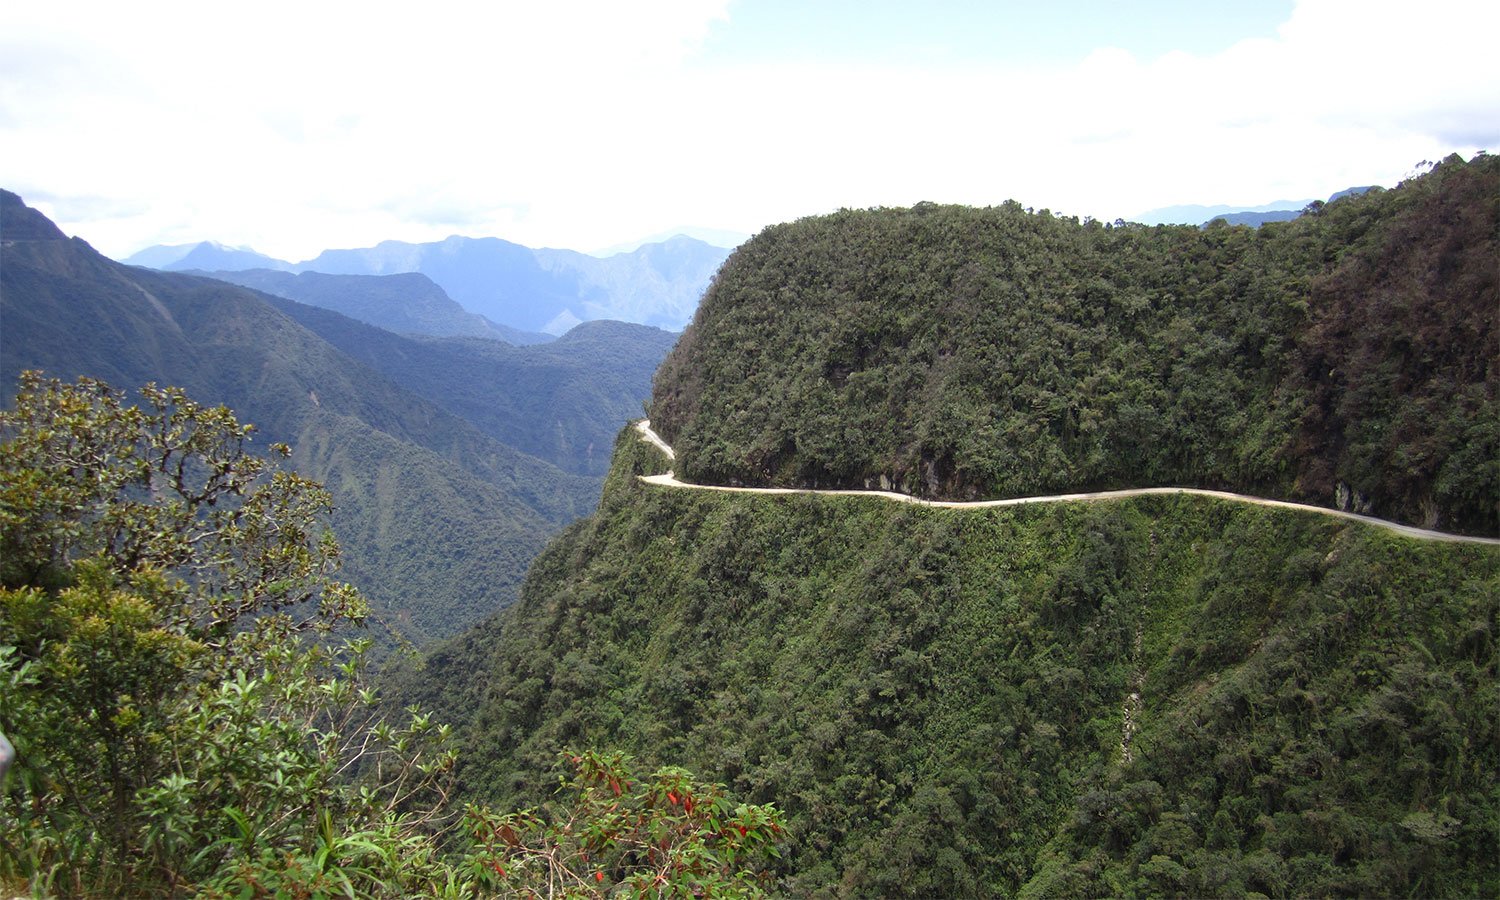 بولیویا کے نارتھ یونگس ہائی وے کو دنیا کی خطرناک ترین شاہراہ قرار دیا جاتا ہے / فوٹو بشکریہ وکی میڈیا کامنز